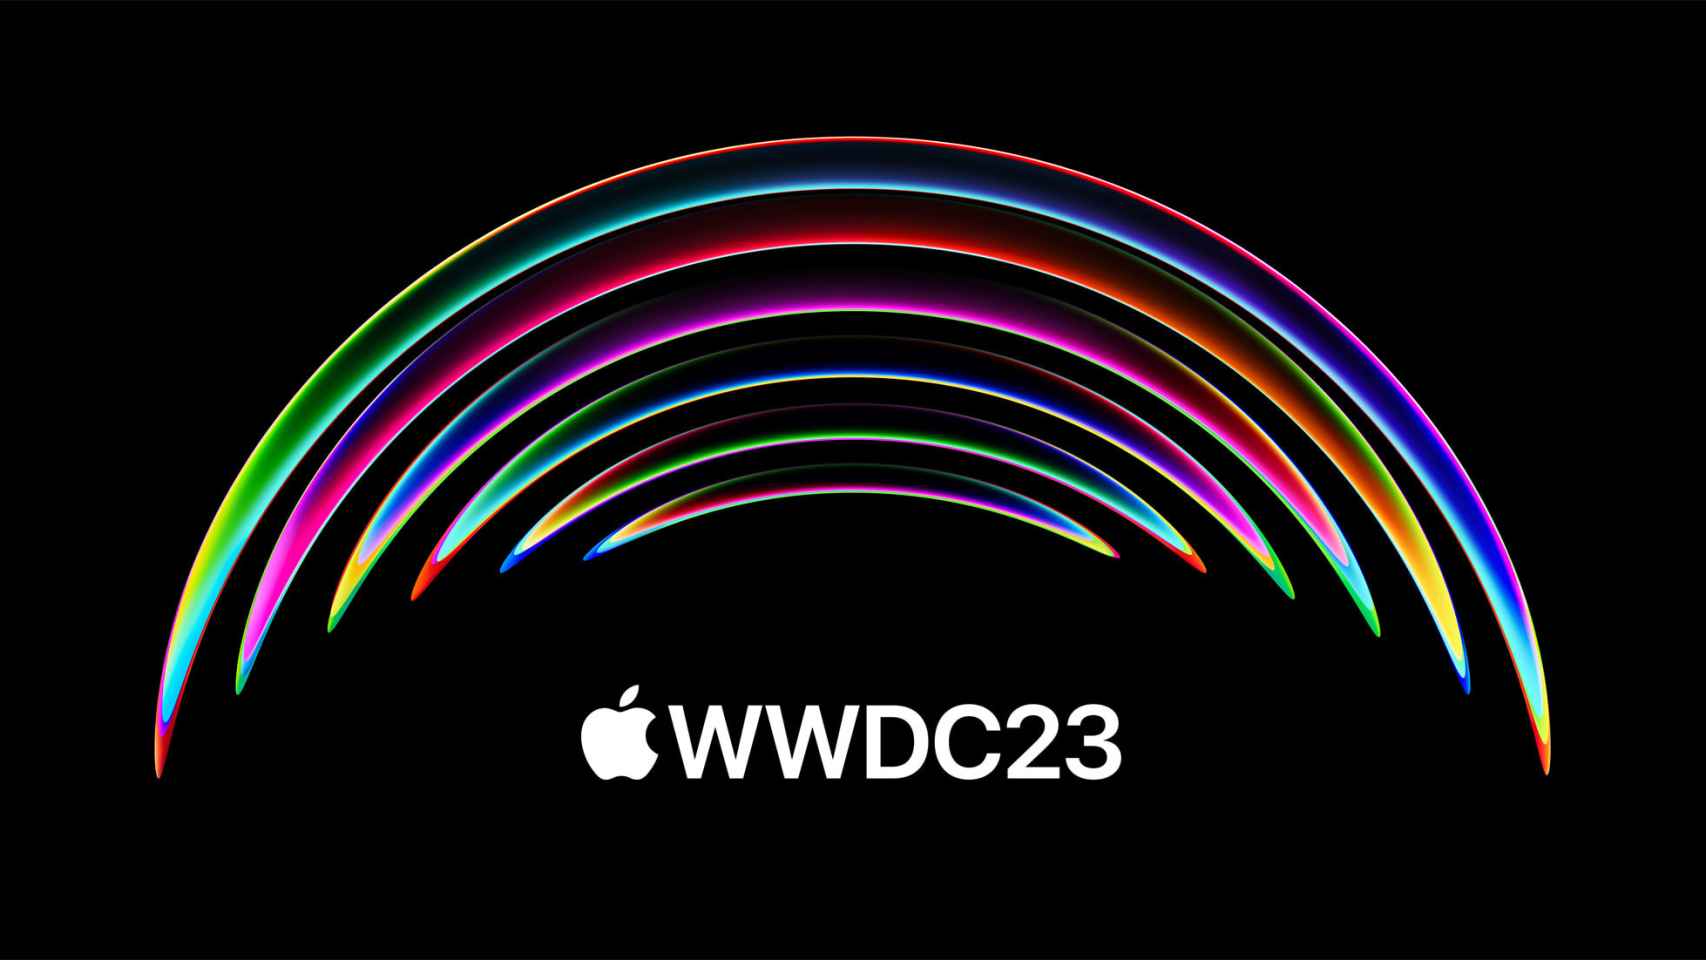 El logo de la WWDC 2023.